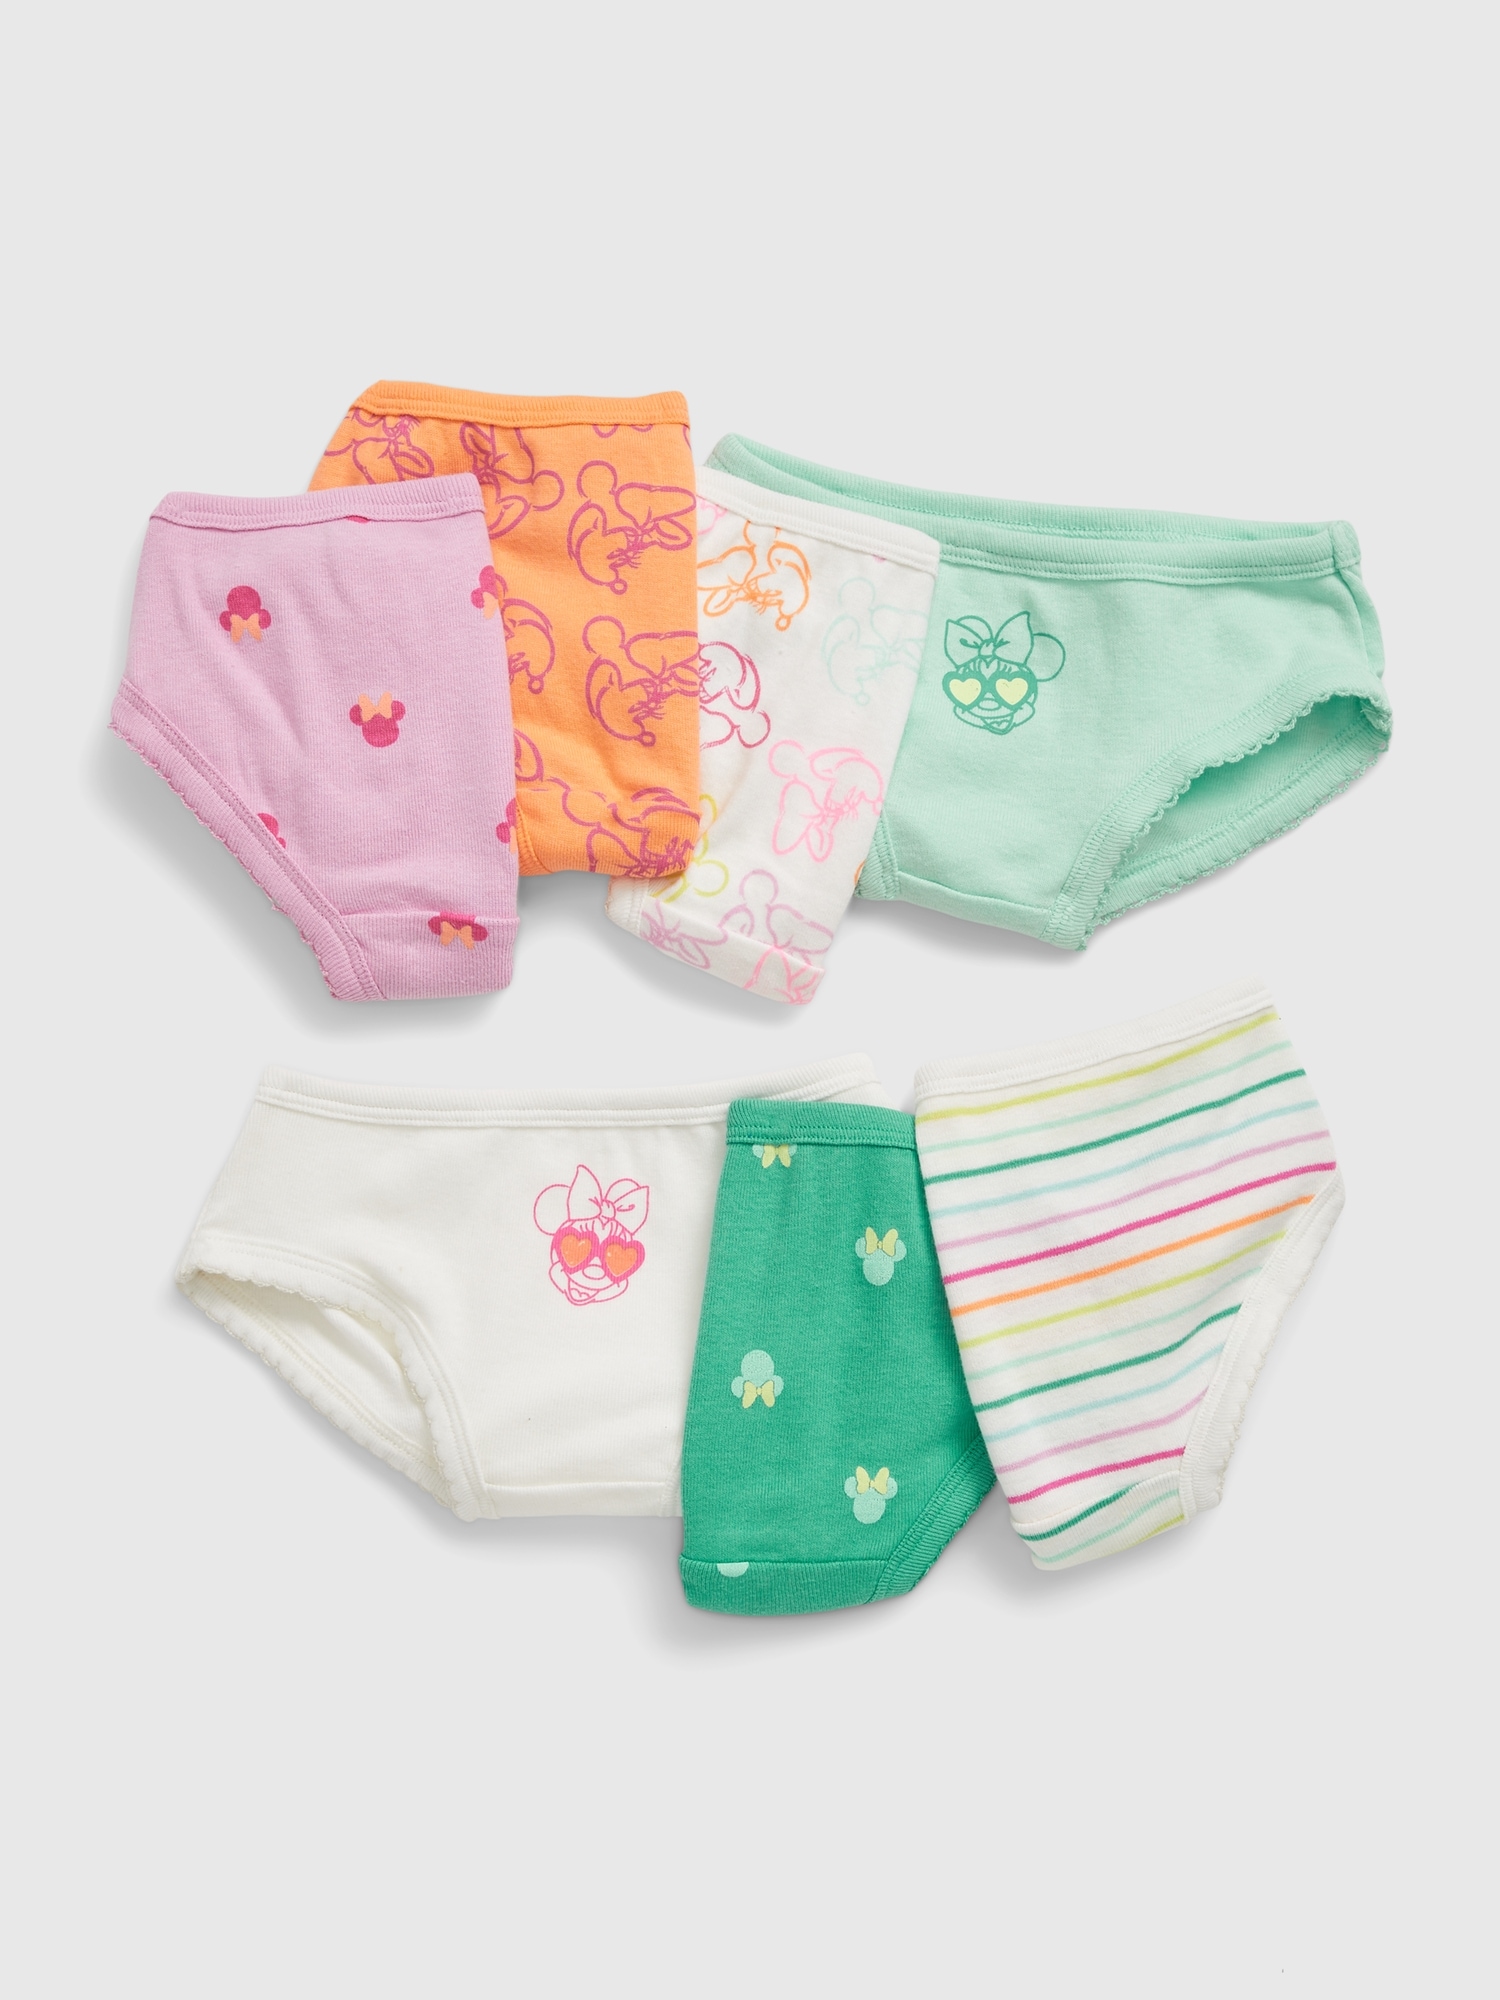 Disney Minnie Mouse Undies Cotton Underwear Panties 7 Girls